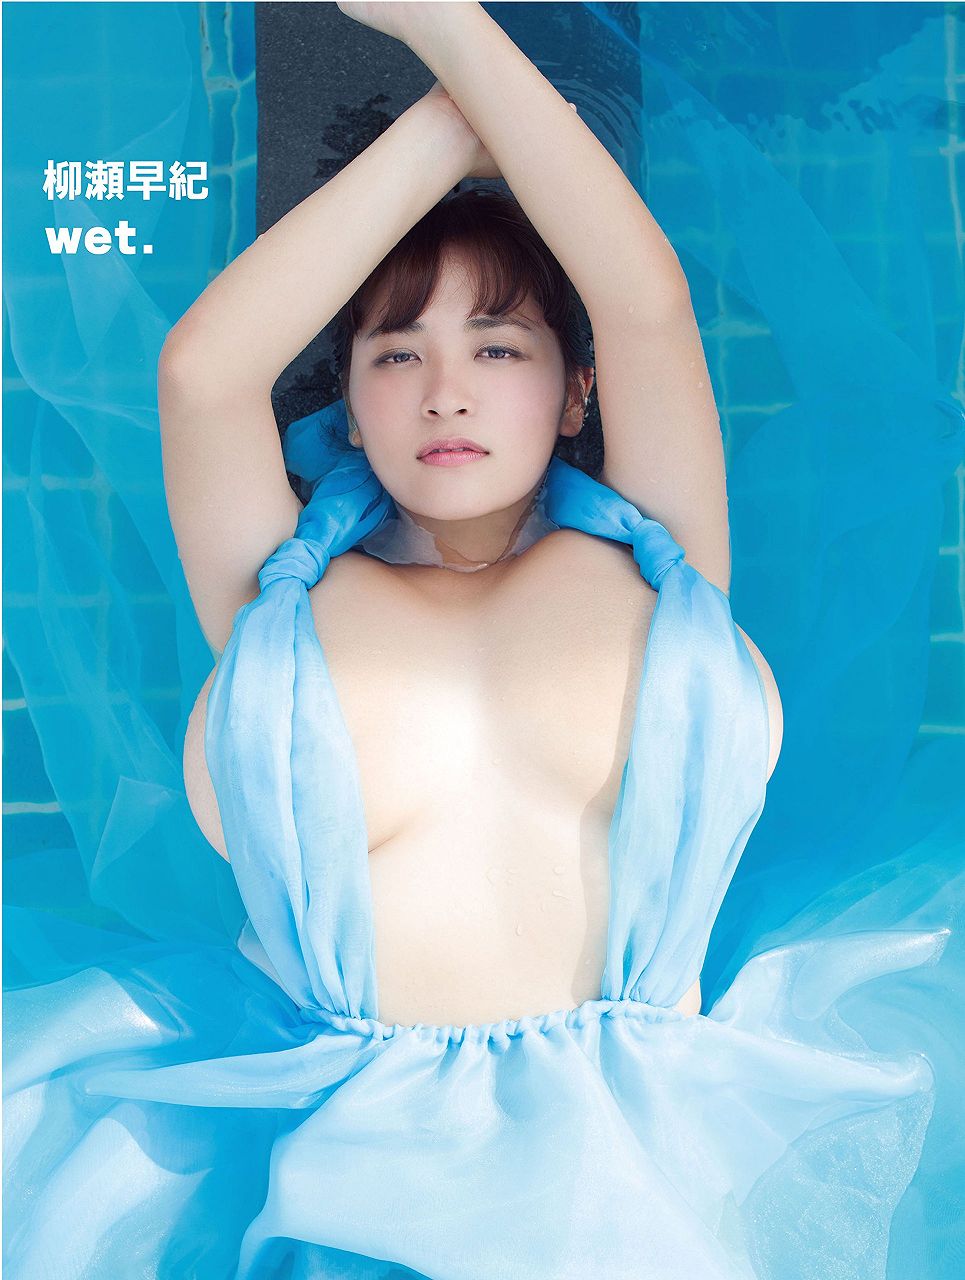 柳瀬早紀の写真集「wet.」表紙